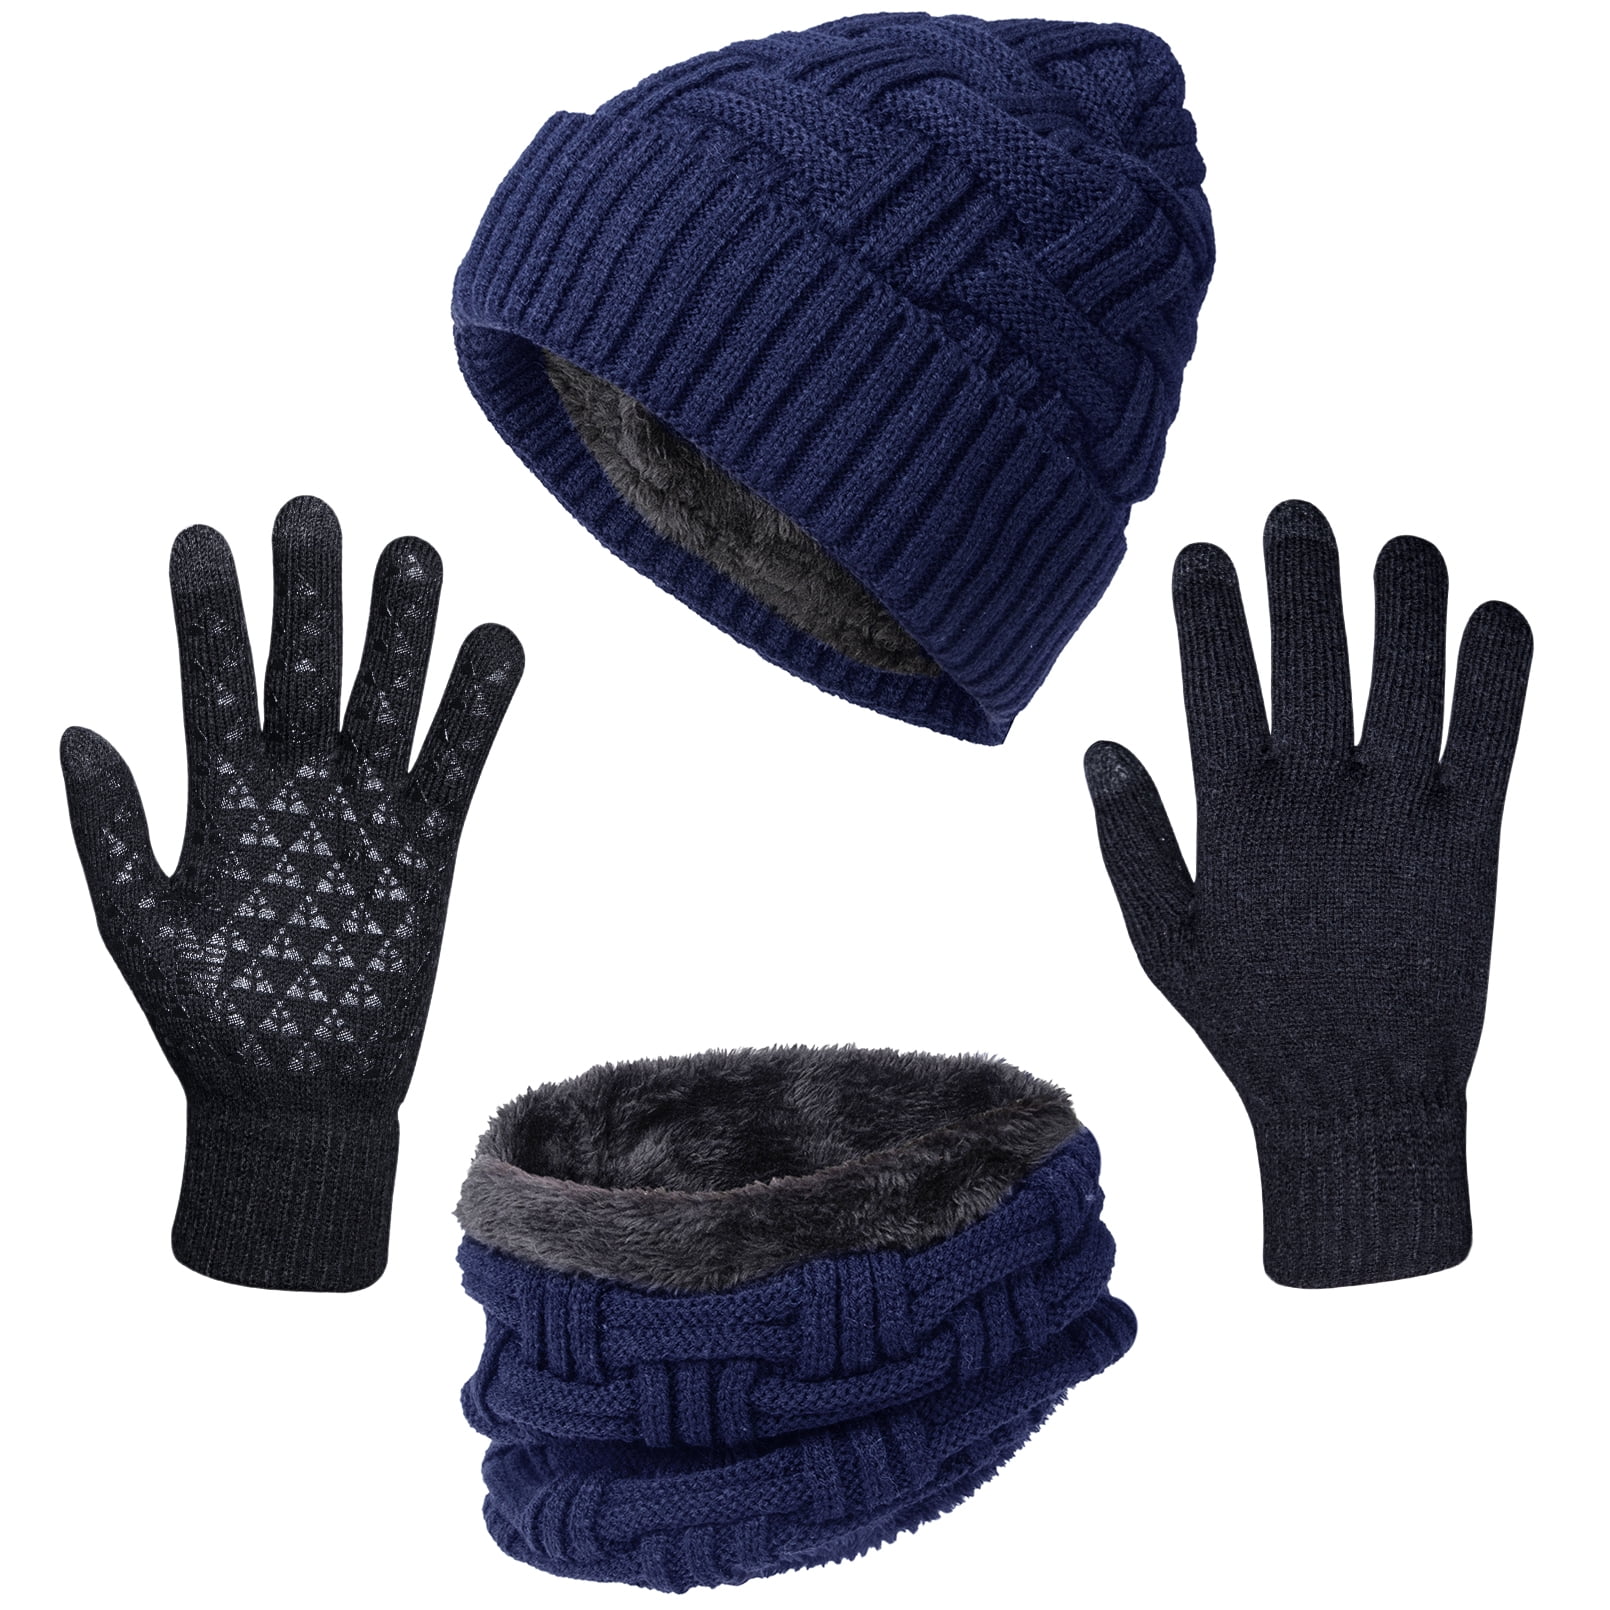 Loritta 3 Pack Men Winter Soft Beanie Hat Touchscreen Gloves Set ...